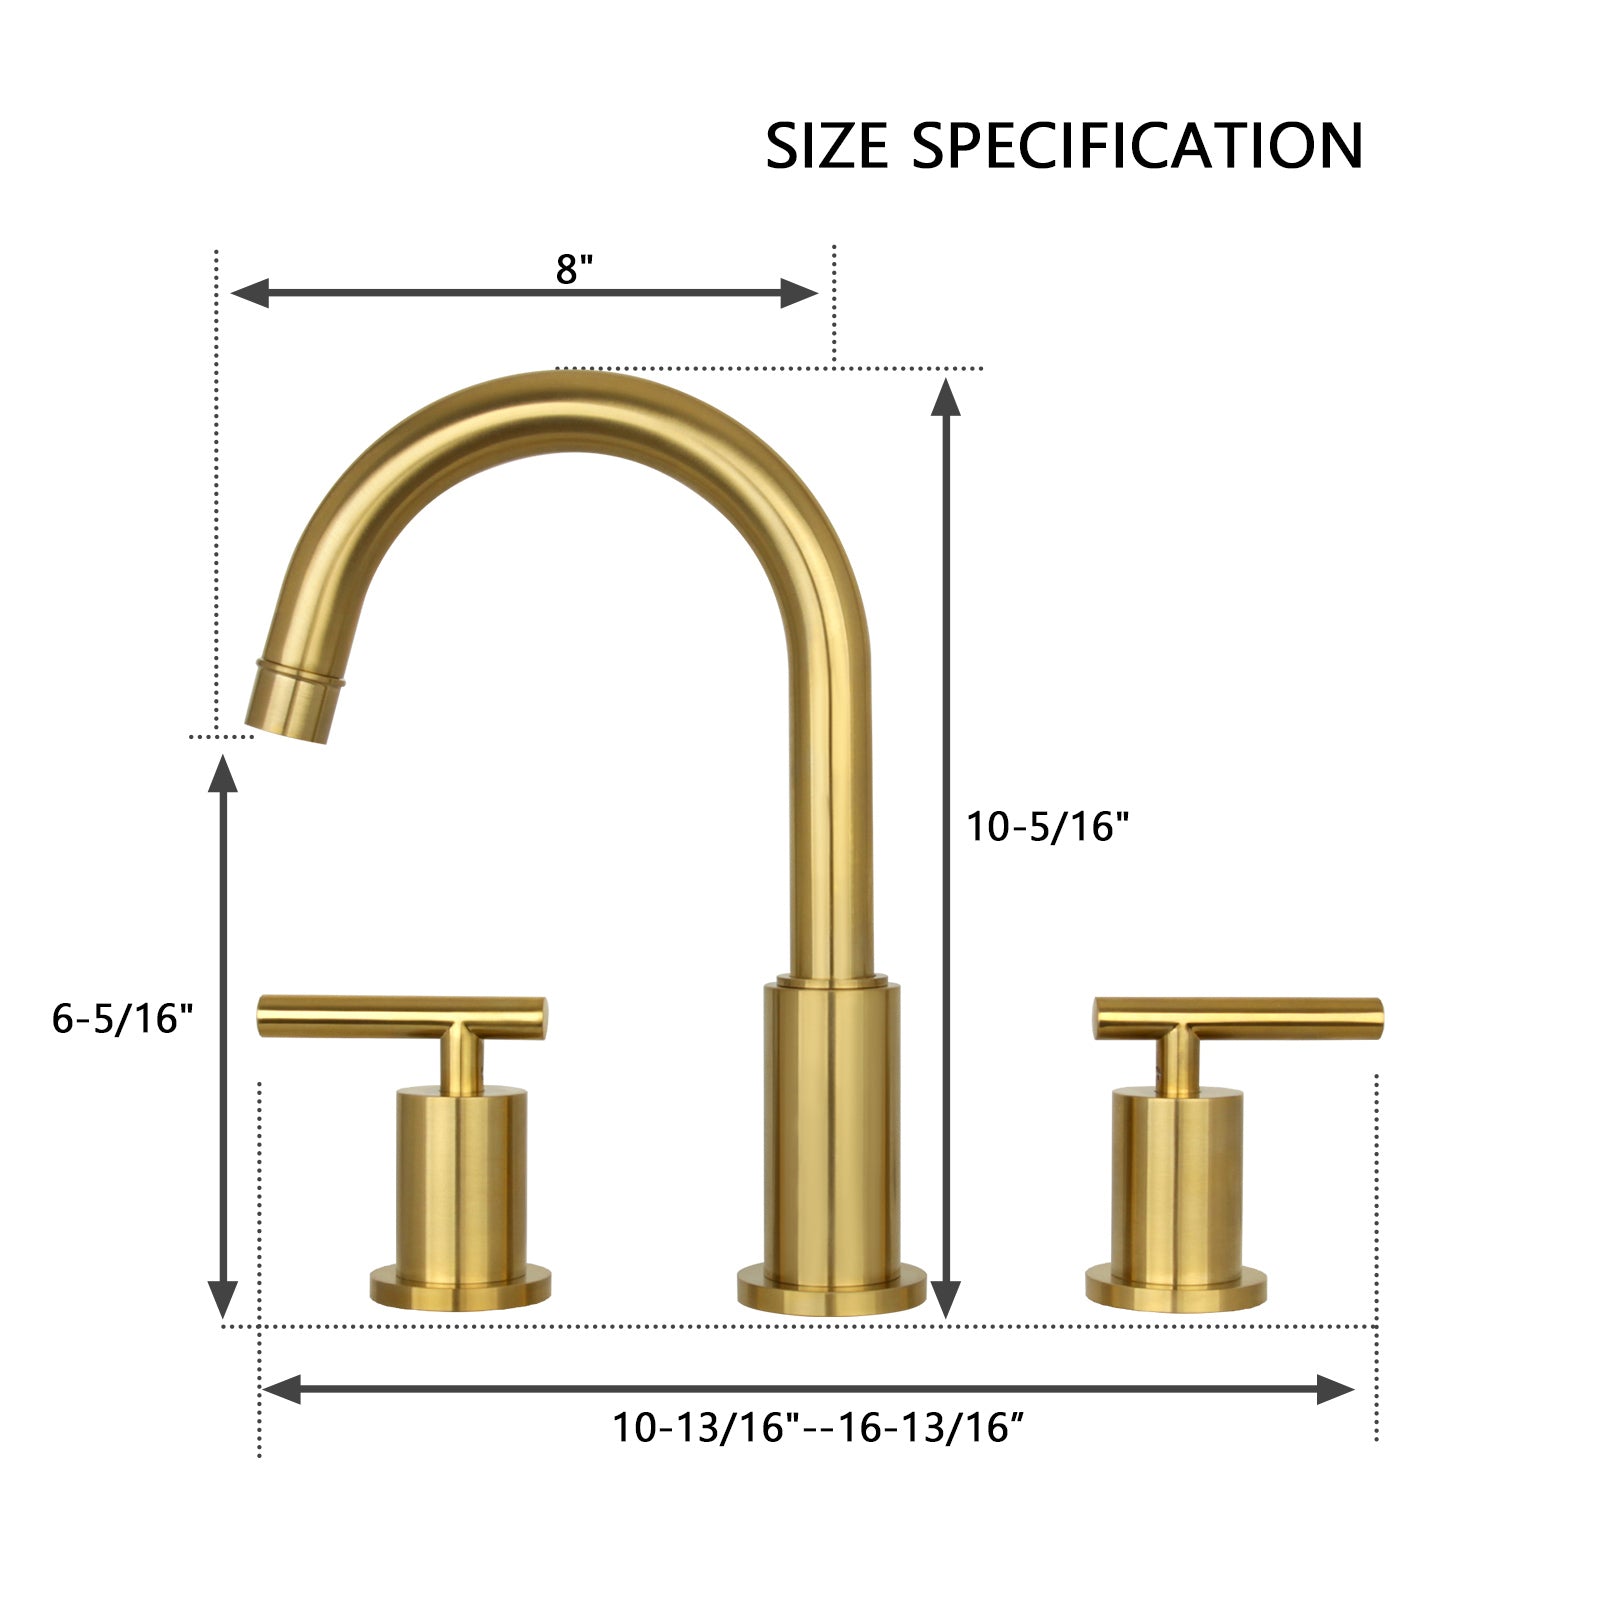 Two-Handle Copper Widespread Bathroom Sink Faucet - AK41566BTG